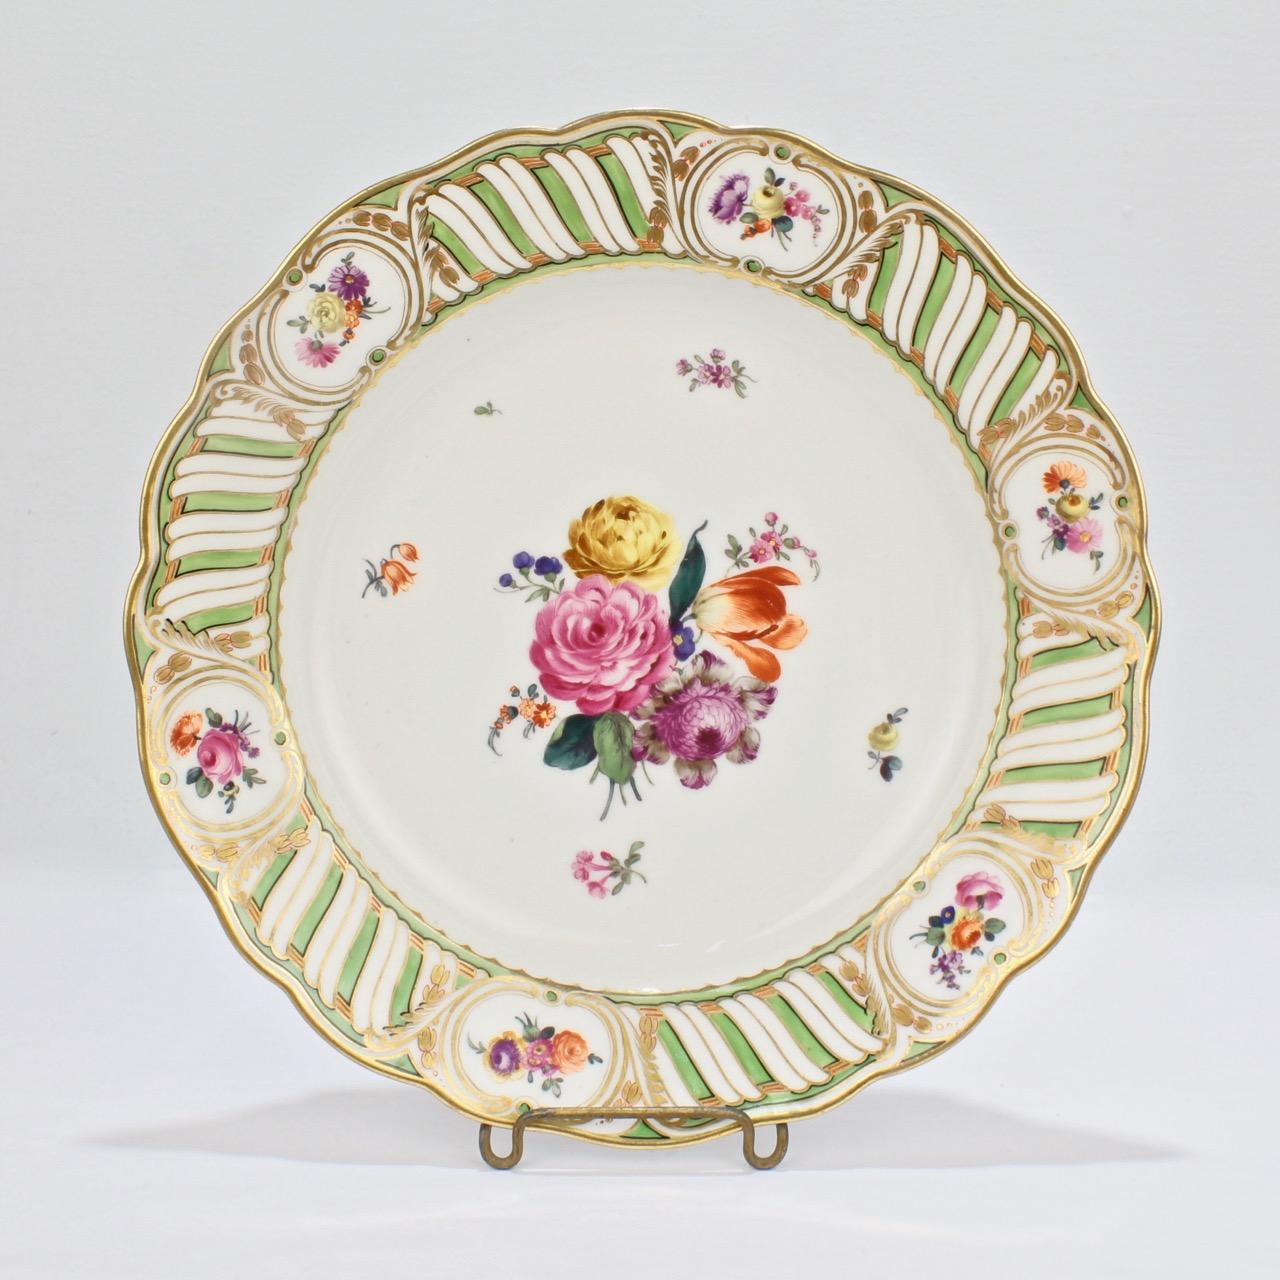 6 Antique Vienna Porcelain Plates with Green Borders & Deutsche Blumen Flowers 3